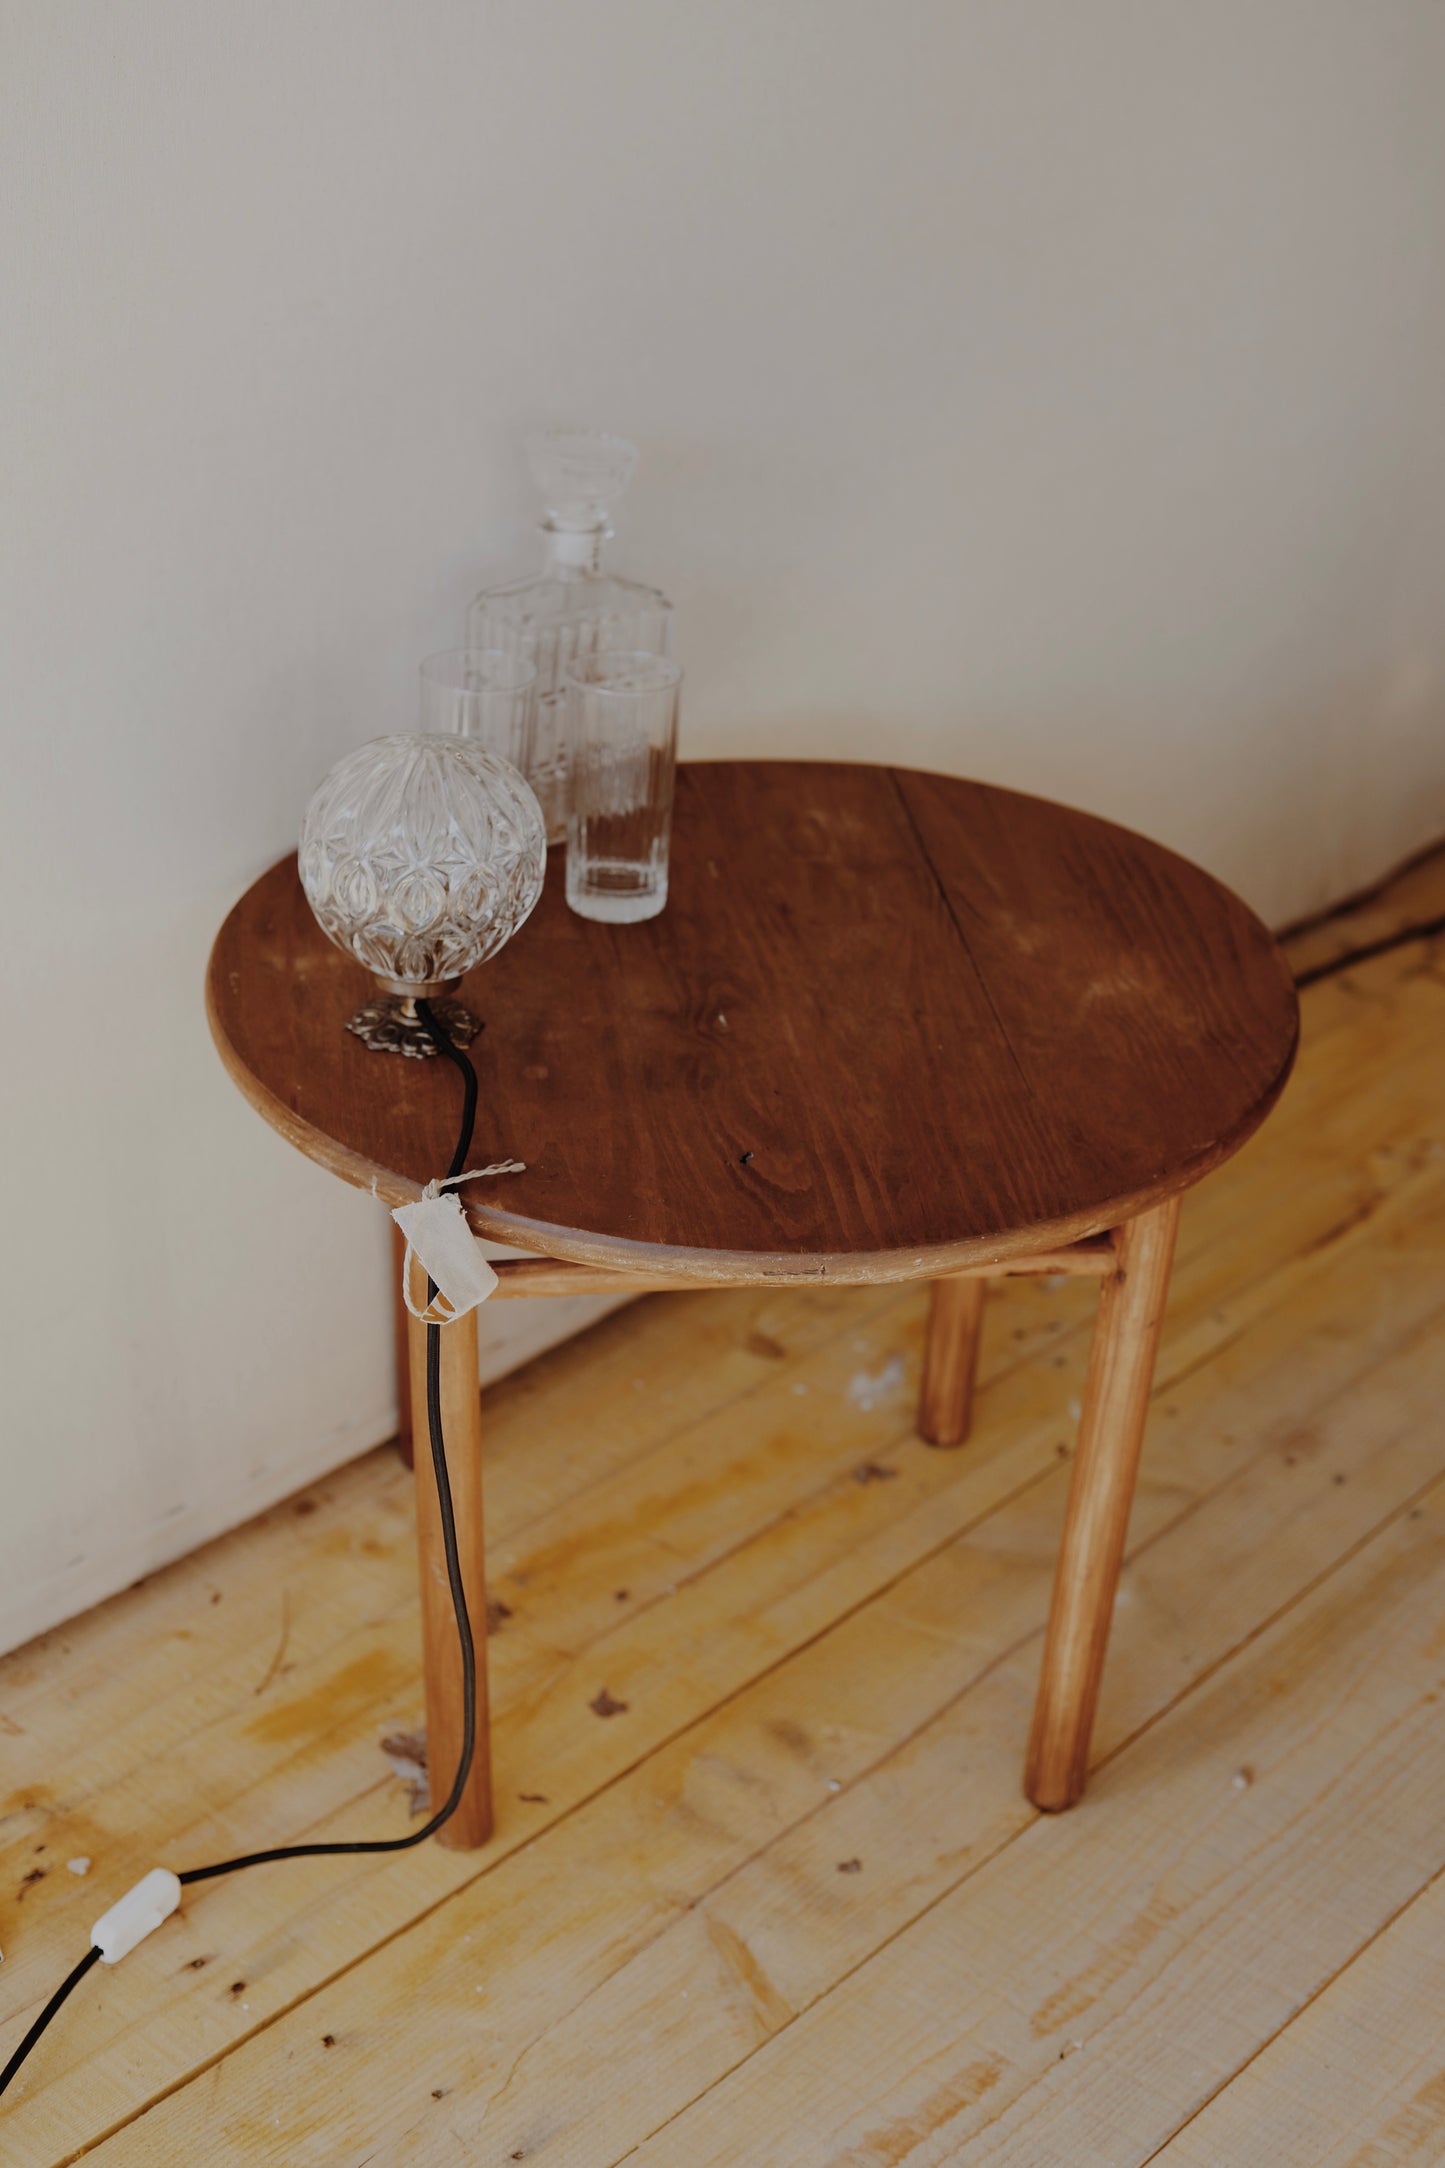 Table basse en bois ronde, teintée et protégée, une pièce originale avec une barre en dessous et un plateau légèrement incurvée au milieu, pas parfaitement plat.